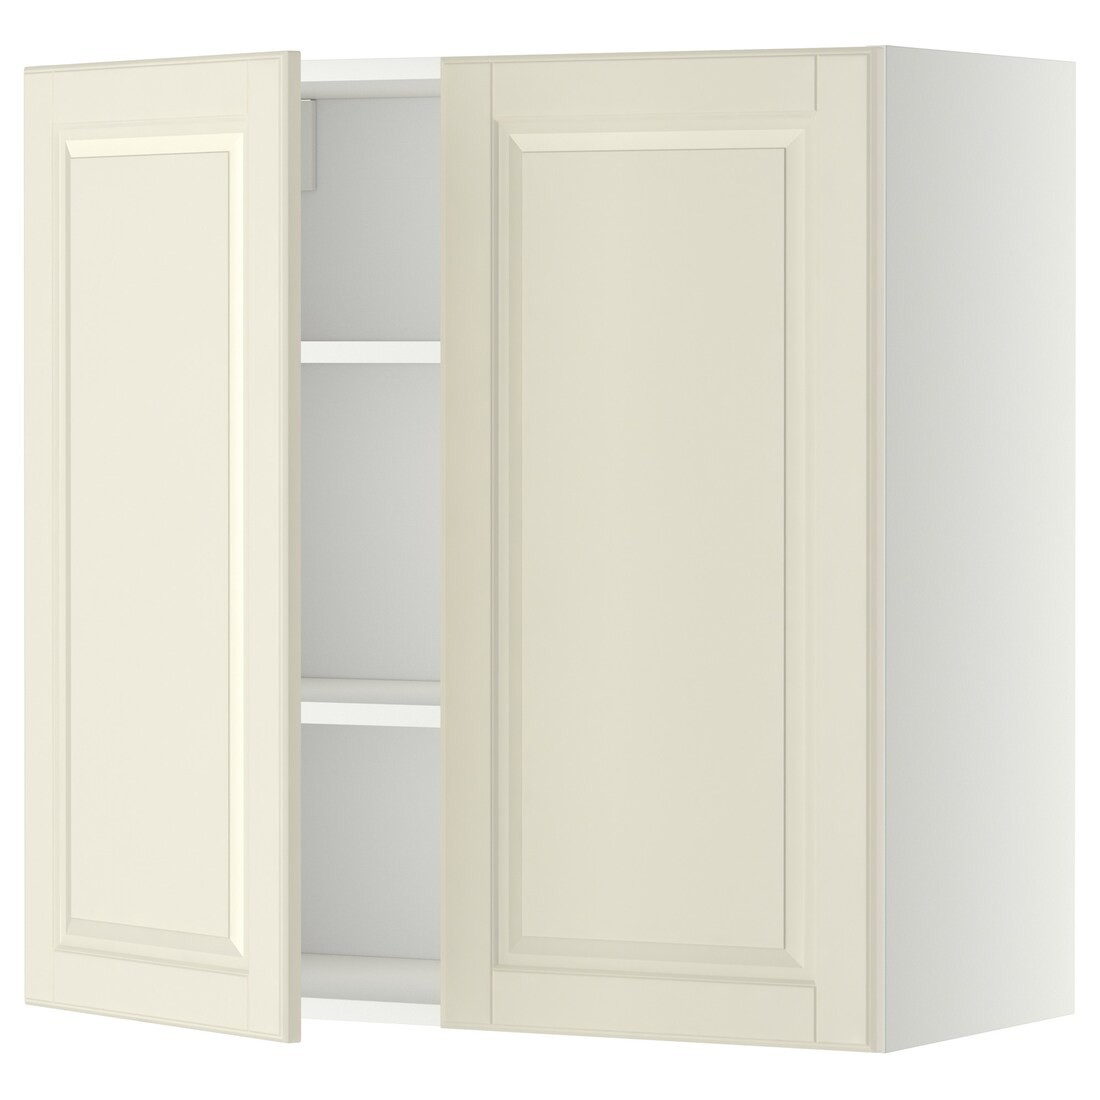 IKEA METOD МЕТОД Навесной шкаф с полками / 2 дверцы, белый / Bodbyn кремовый, 80x80 см 69467741 694.677.41